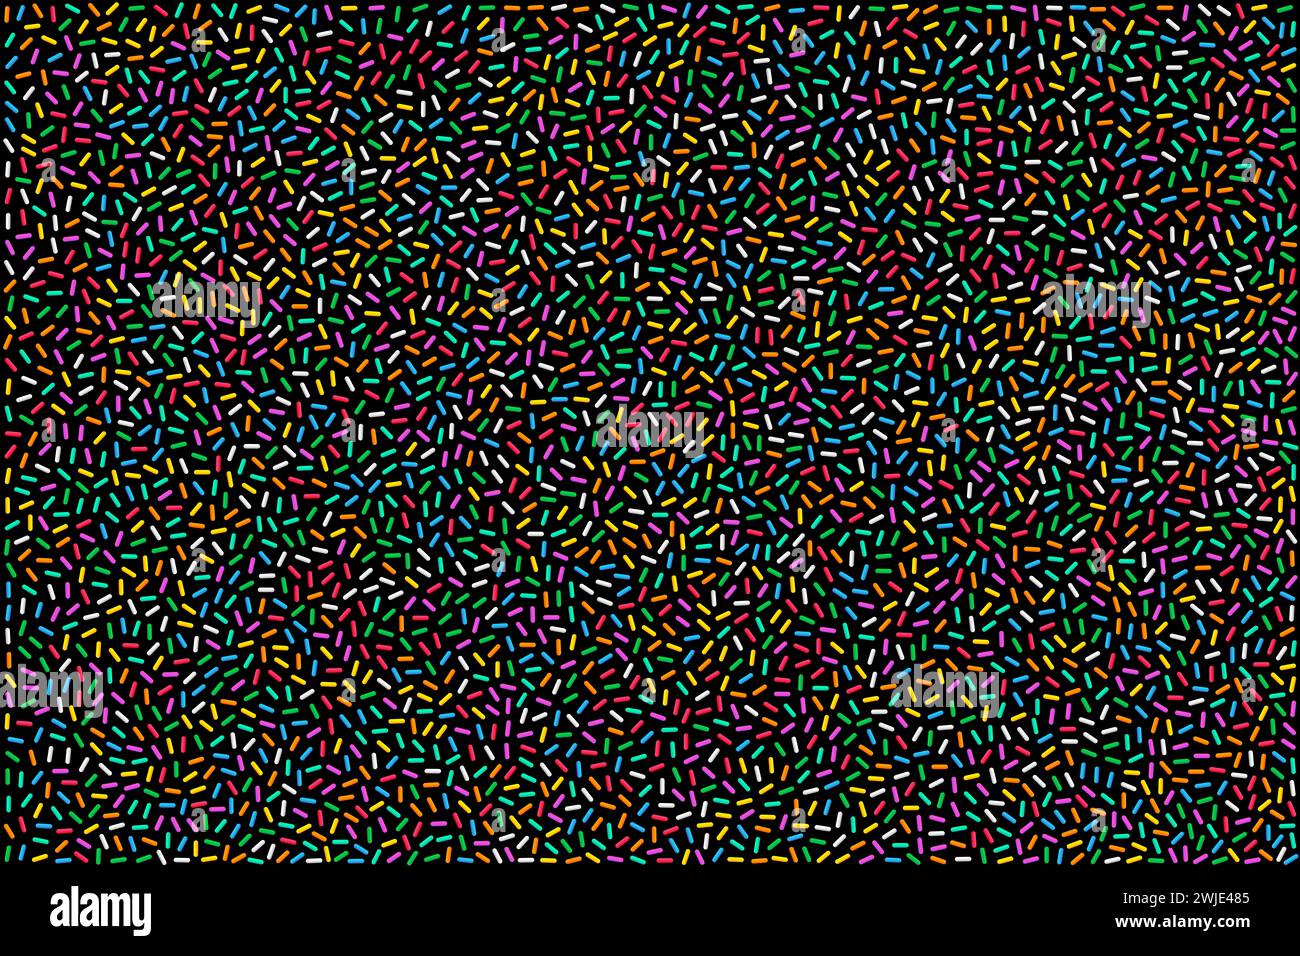 Bunte Regenbogenstreuer auf schwarzem Hintergrund. Bunte, stabförmige Zuckerstreusel, kleine Süßigkeiten in acht verschiedenen Farben. Stockfoto